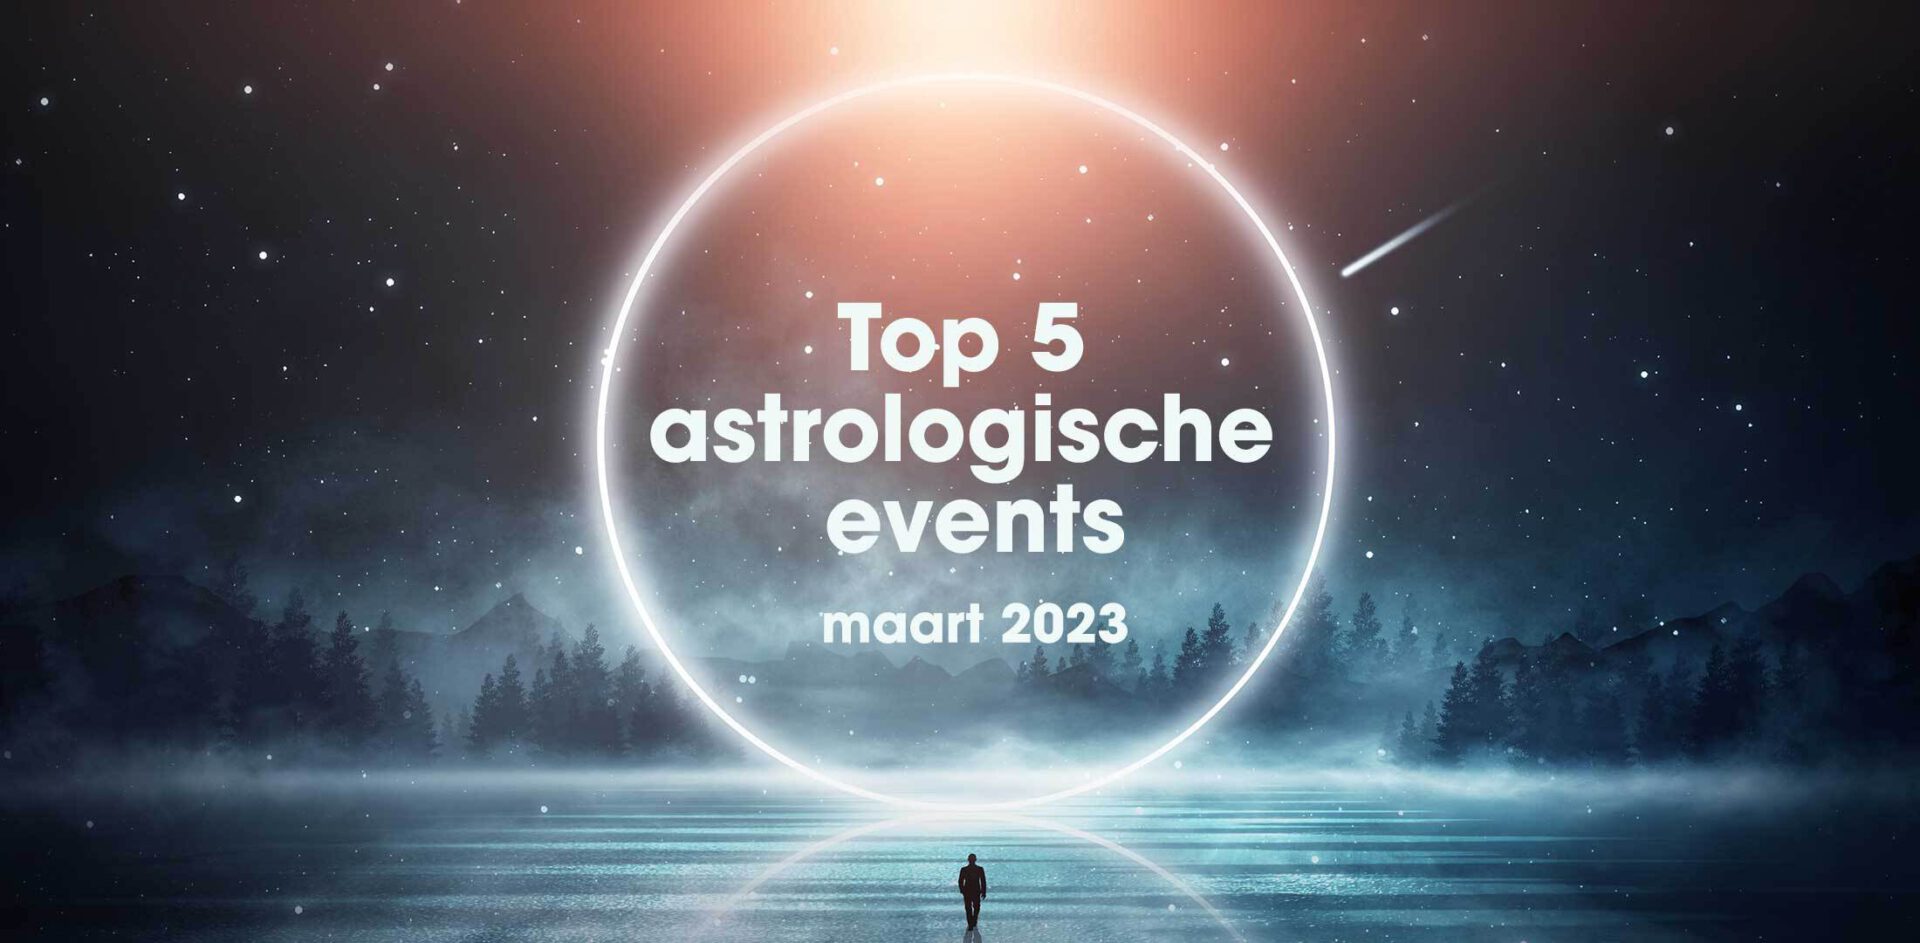 De top 5 astrologische gebeurtenissen in maart 2023